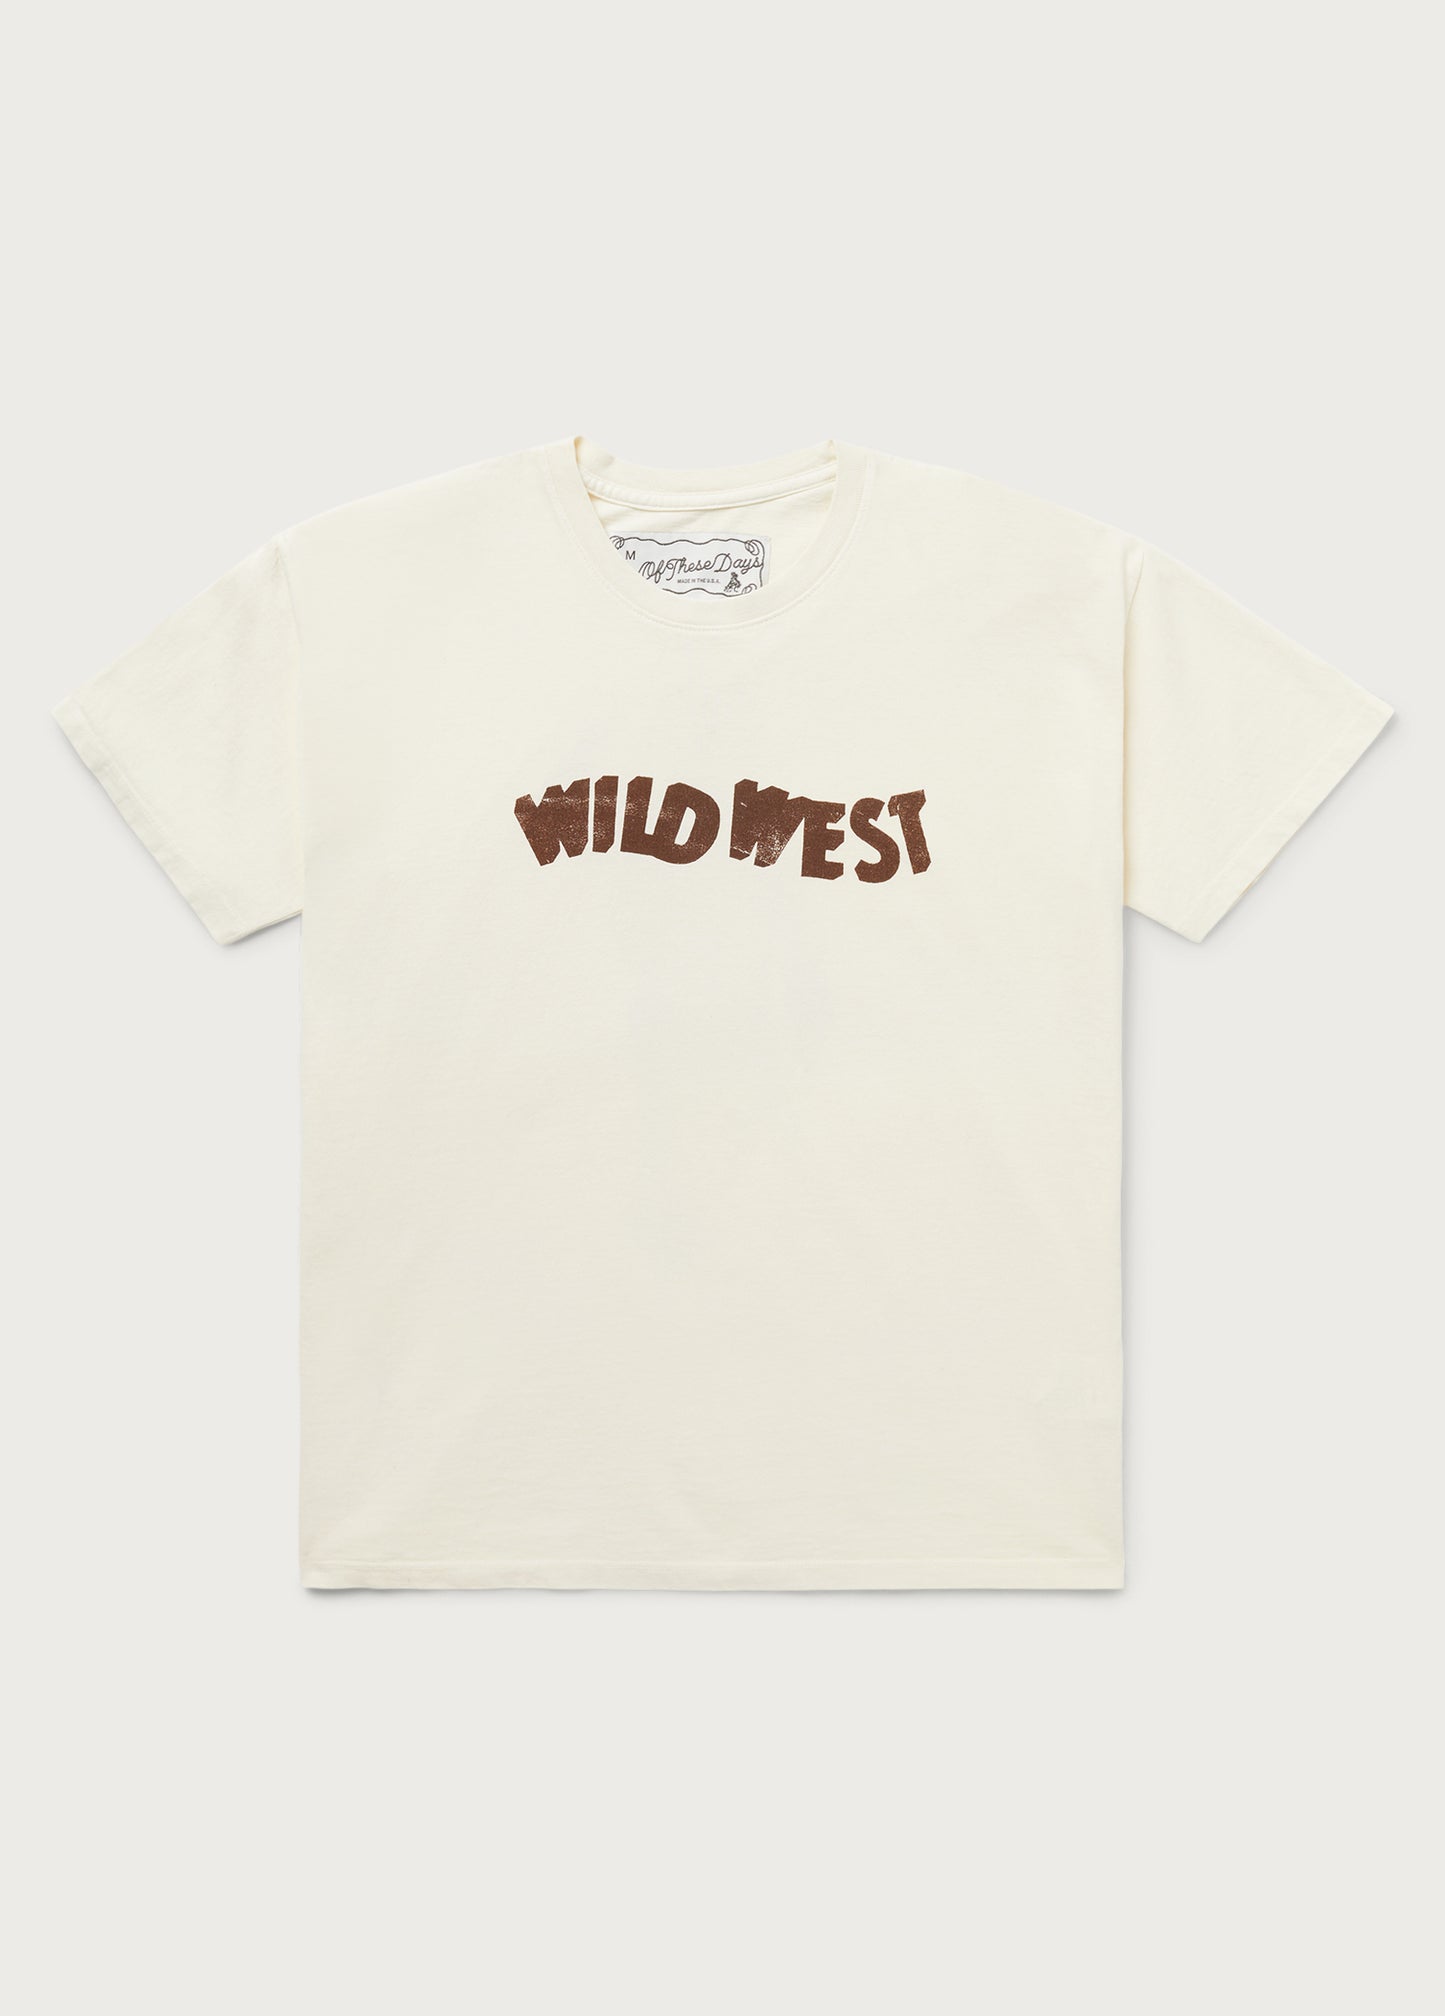 Wild West Tee | Bone